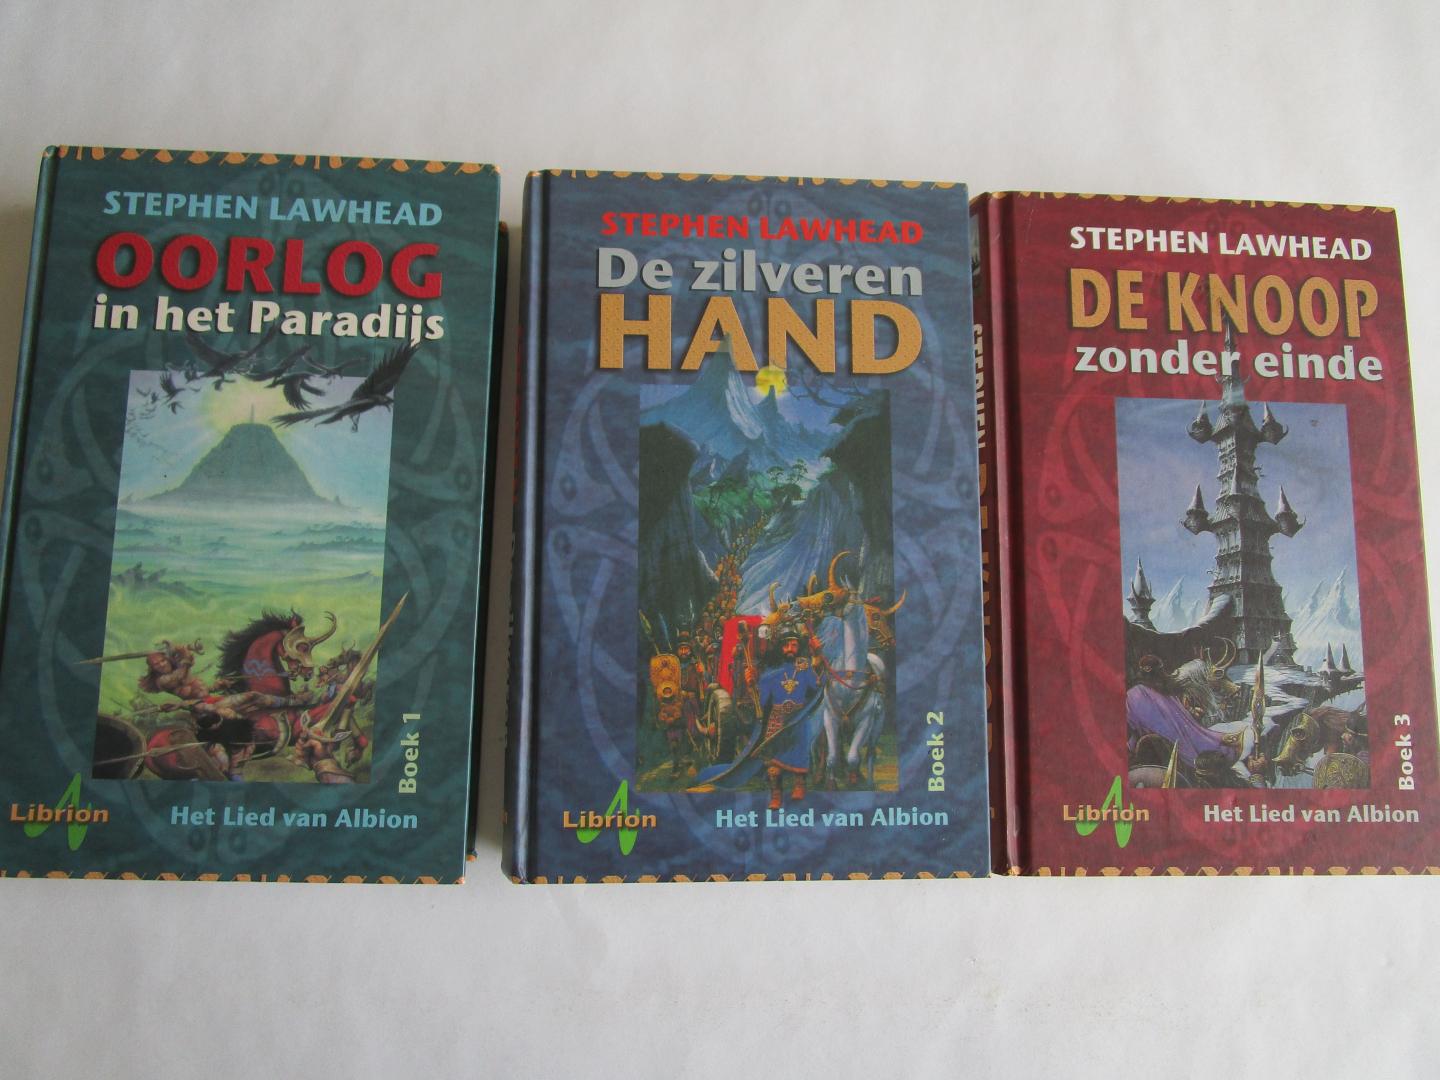 Lawhead, Stephen - HET LIED VAN DE ALBION - komplete trilogie, 3 delen, 3 boeken;  (1) Oorlog in het paradijs (2) De zilveren hand (3) De knoop zonder einde